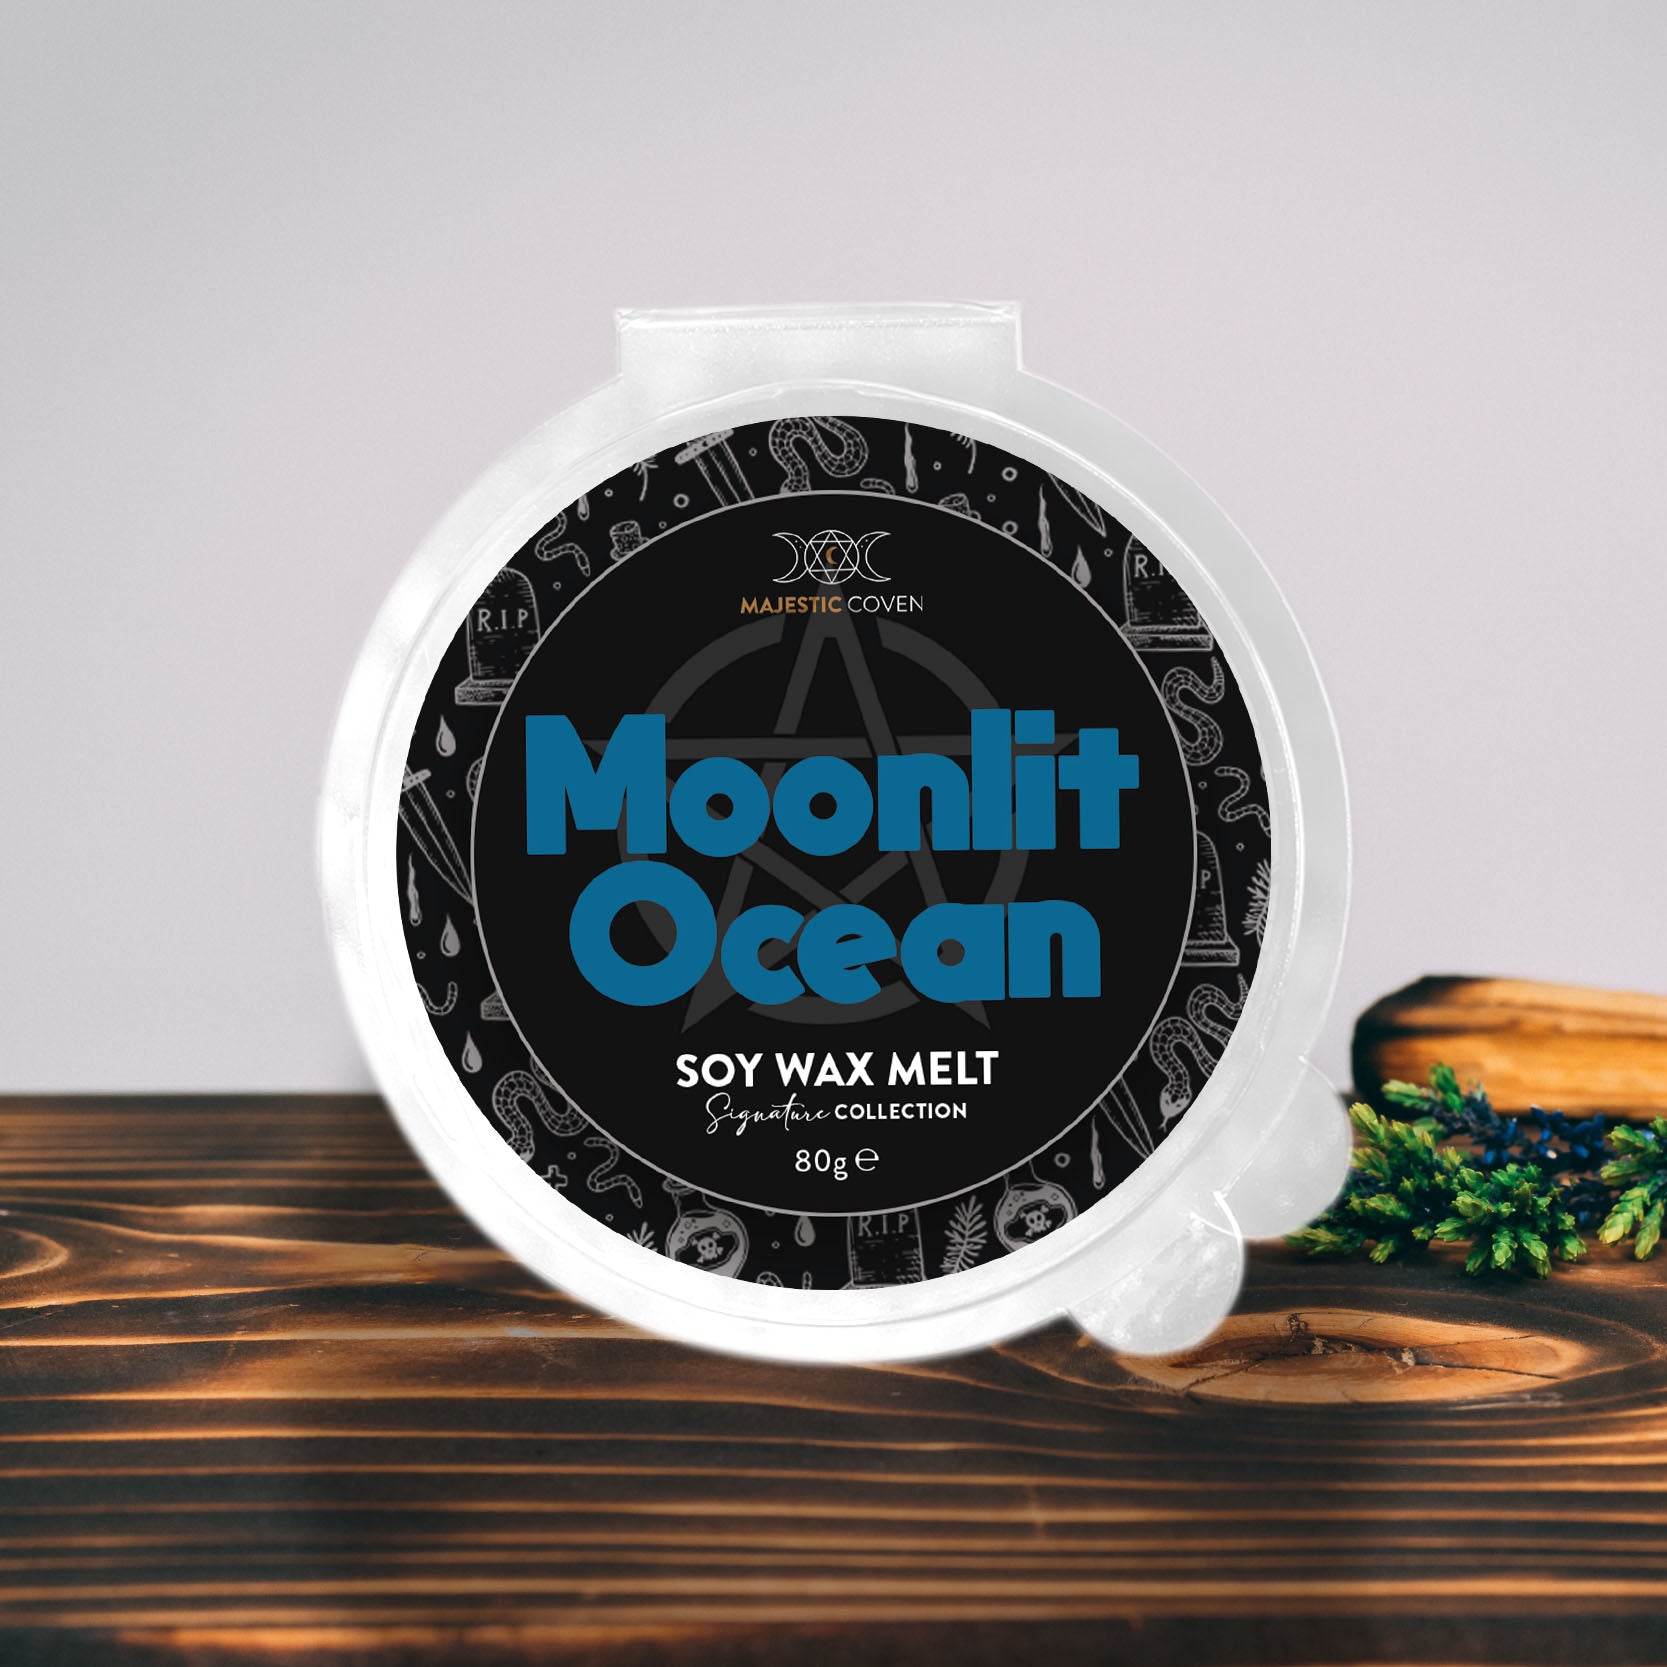 Moonlit Ocean - Soy Wax Melt 80g Segment Pot Majestic Coven